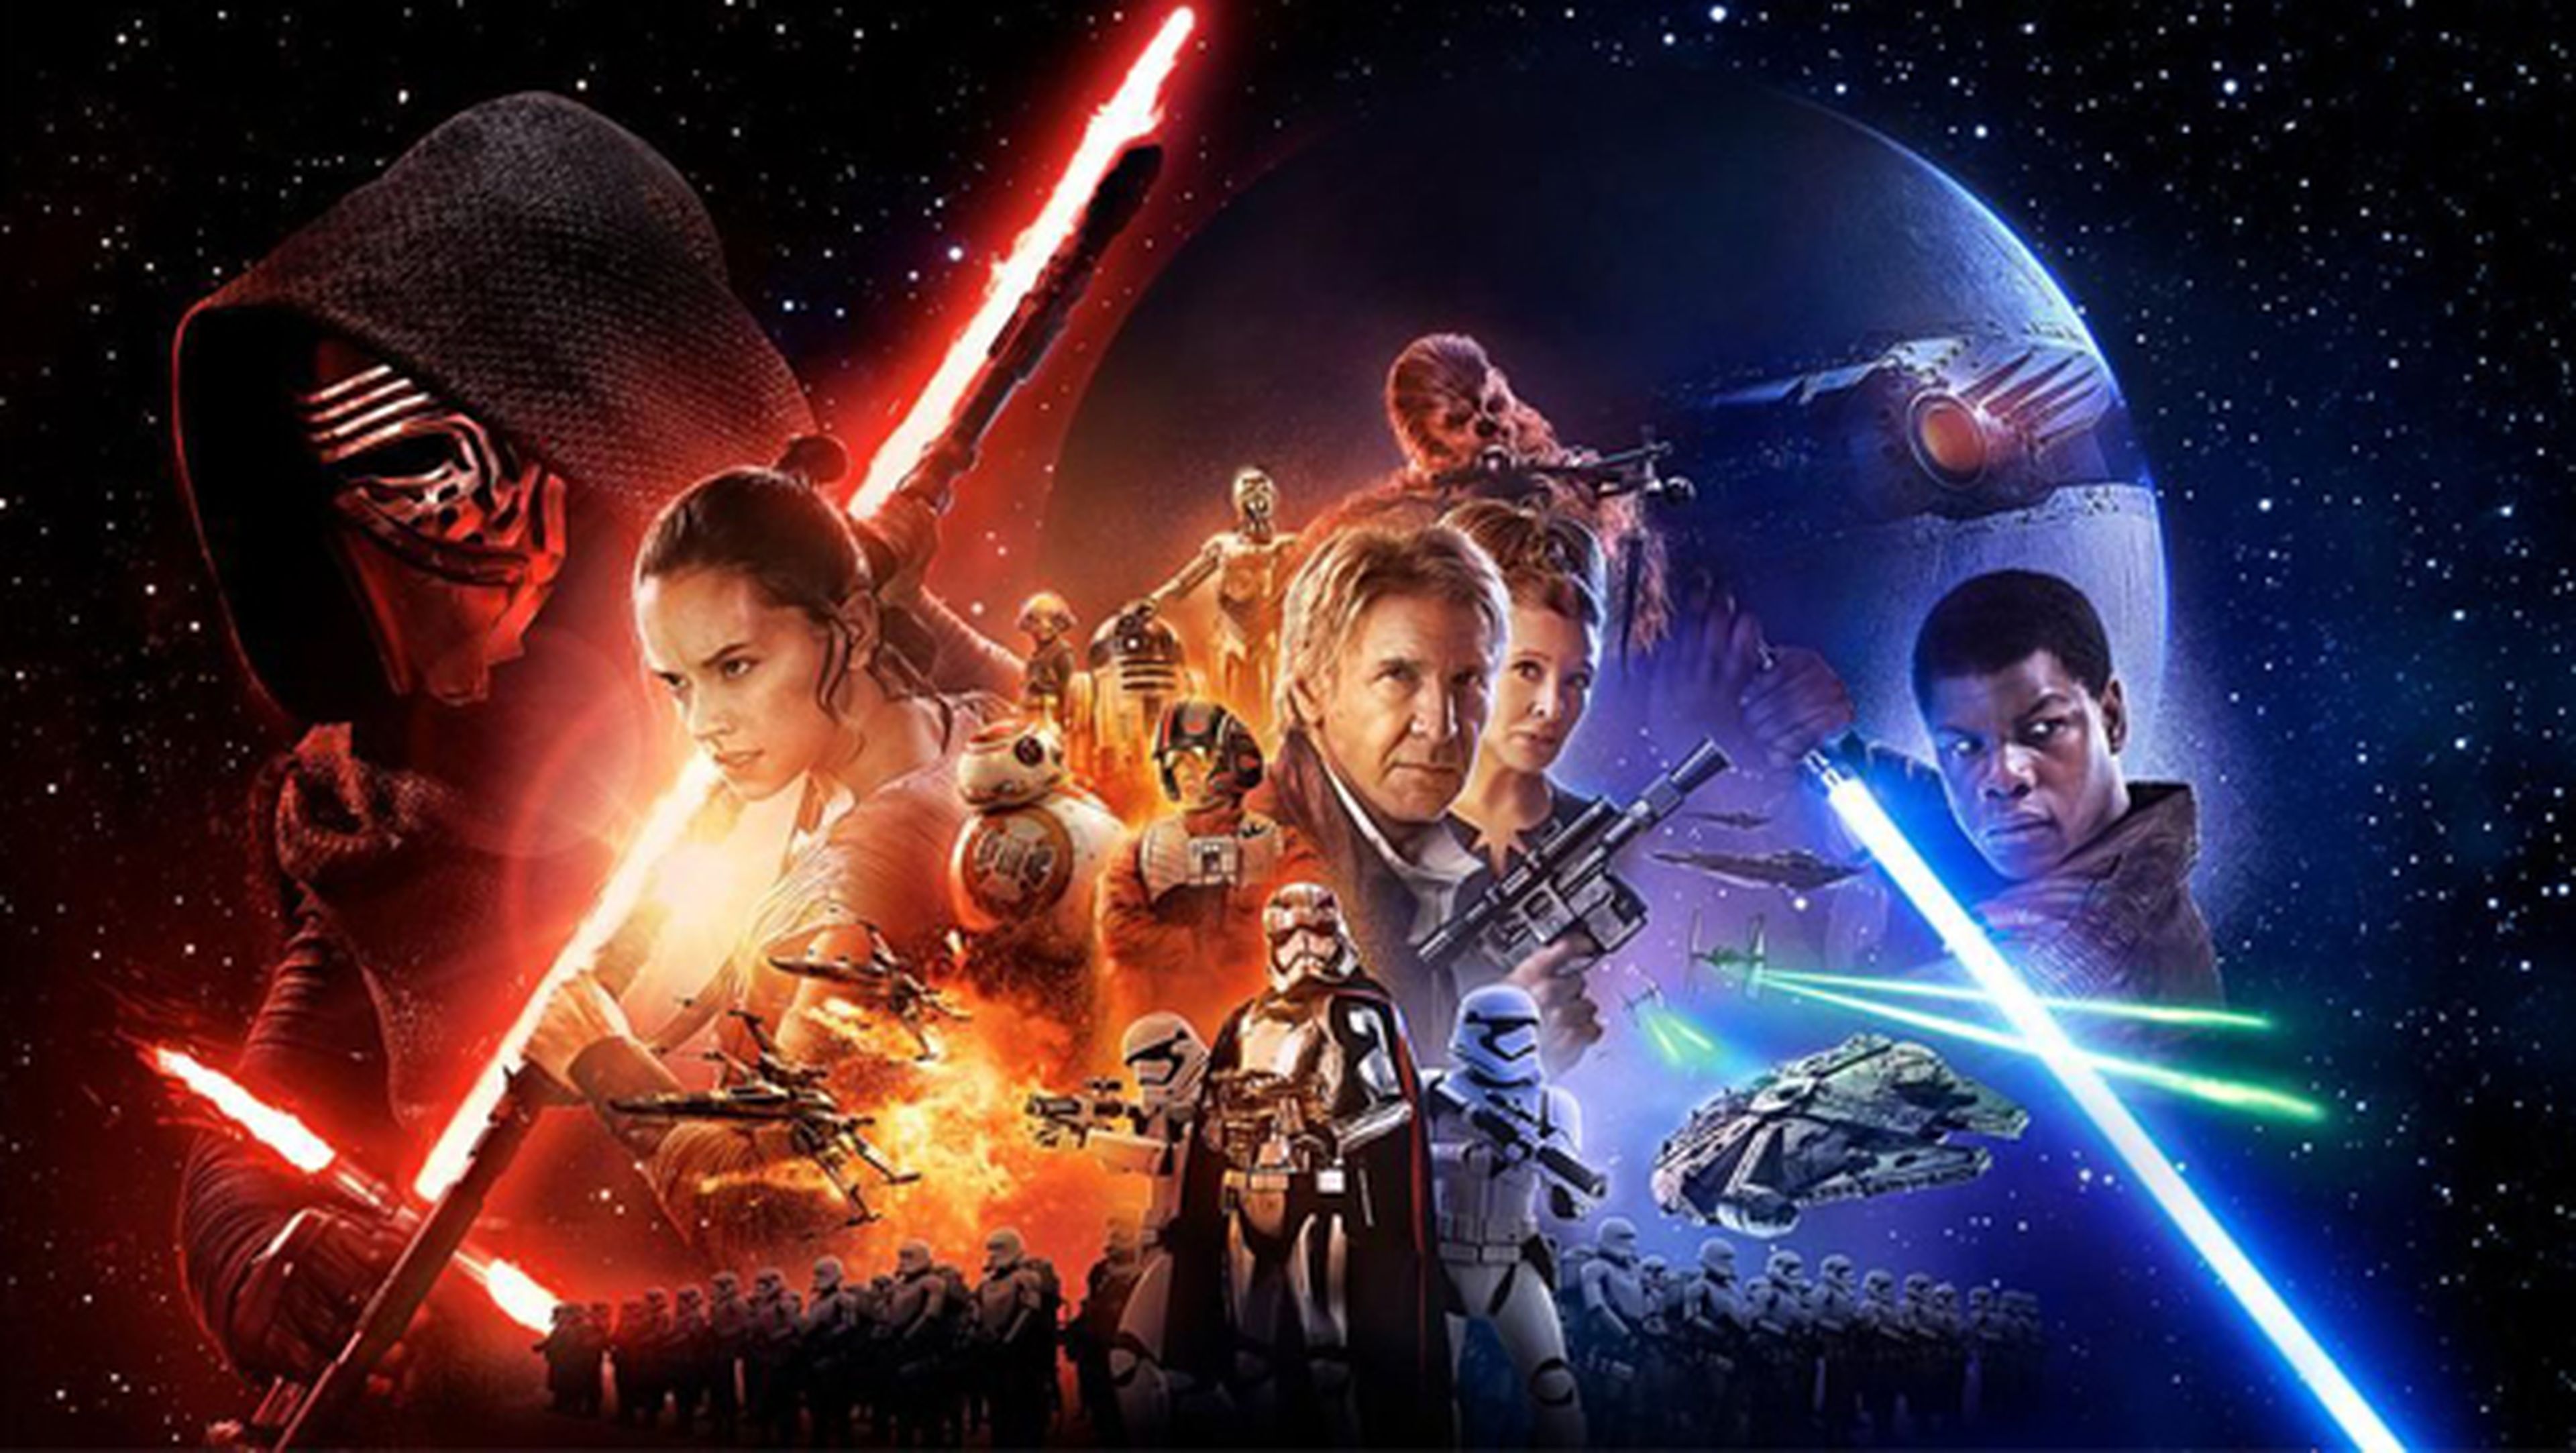 Star Wars Episodio VII: El despertar de la fuerza, ya a la venta en DVD y Blu-Ray